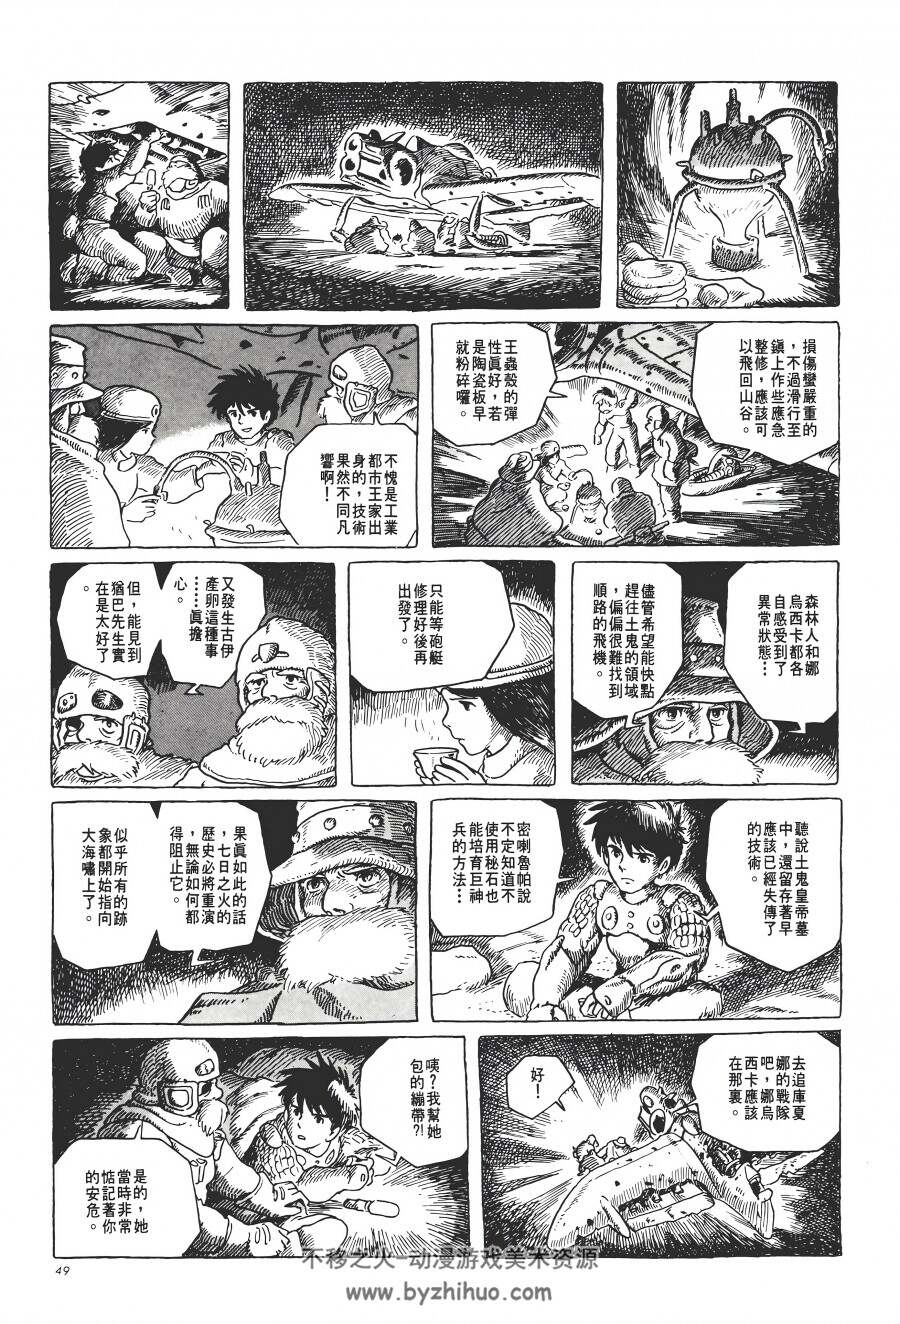 风之谷宫崎骏 4K高清7卷全台湾东贩中文漫画 百度网盘分享观看